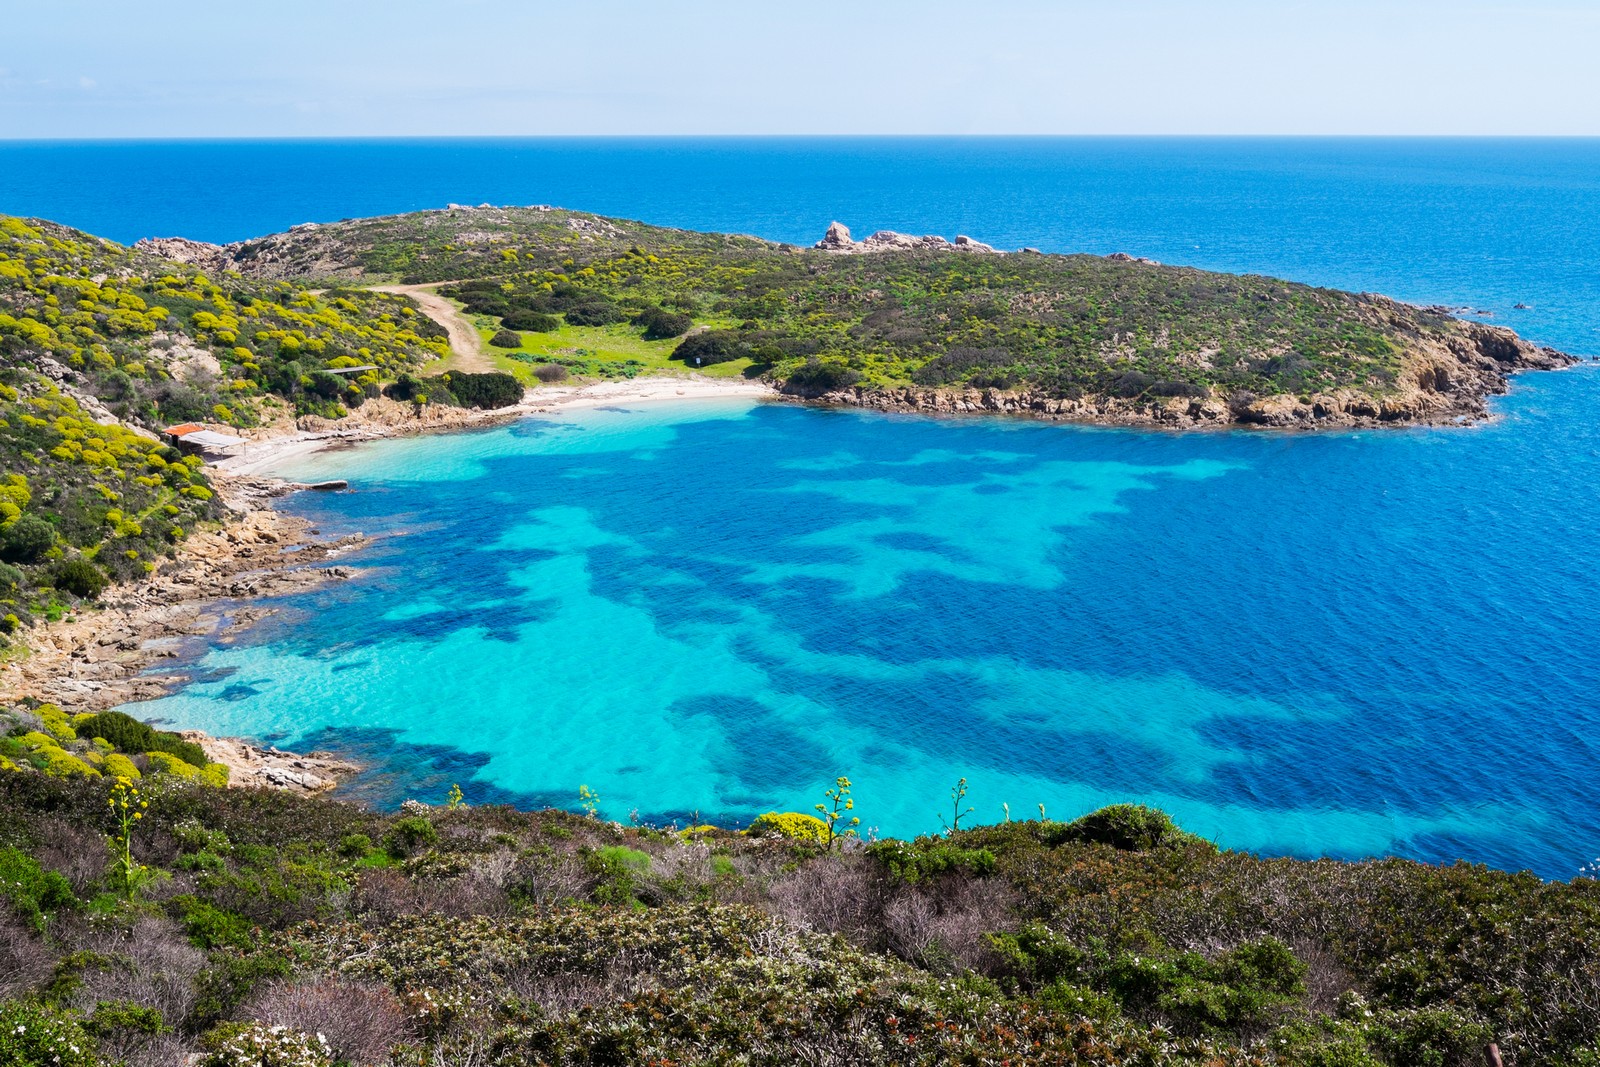 Isola dell'Asinara: come arrivare, dove dormire e spiagge - Sardegna.info